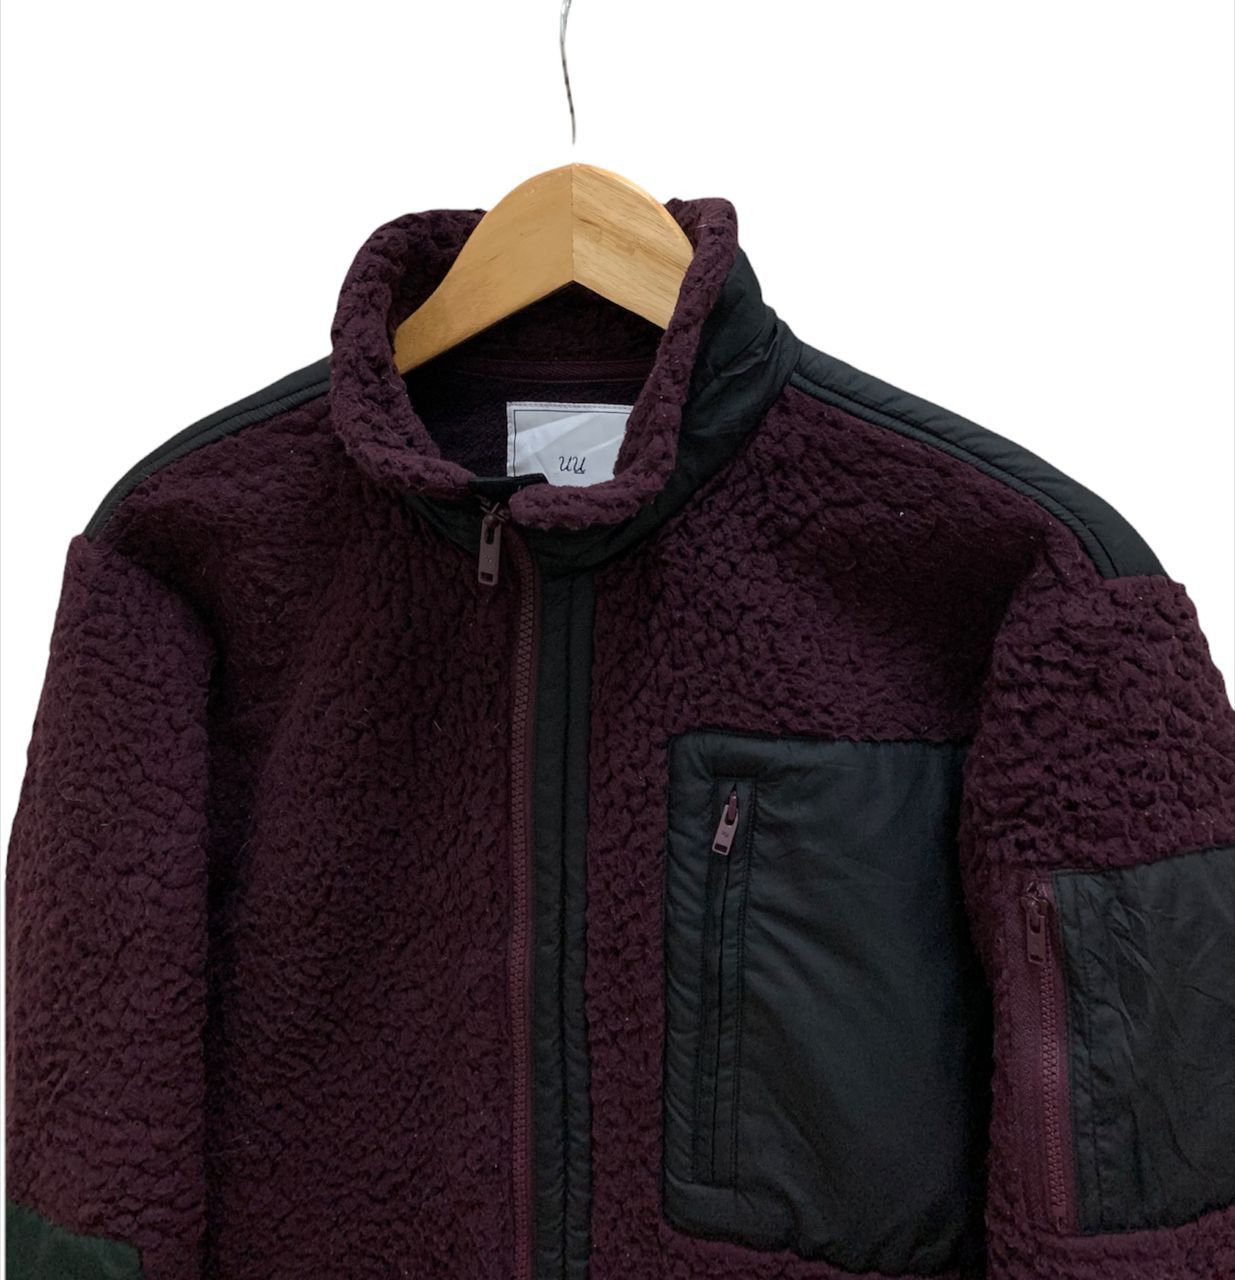 Undercover Uniqlo Fleece Pile Jacket - 3